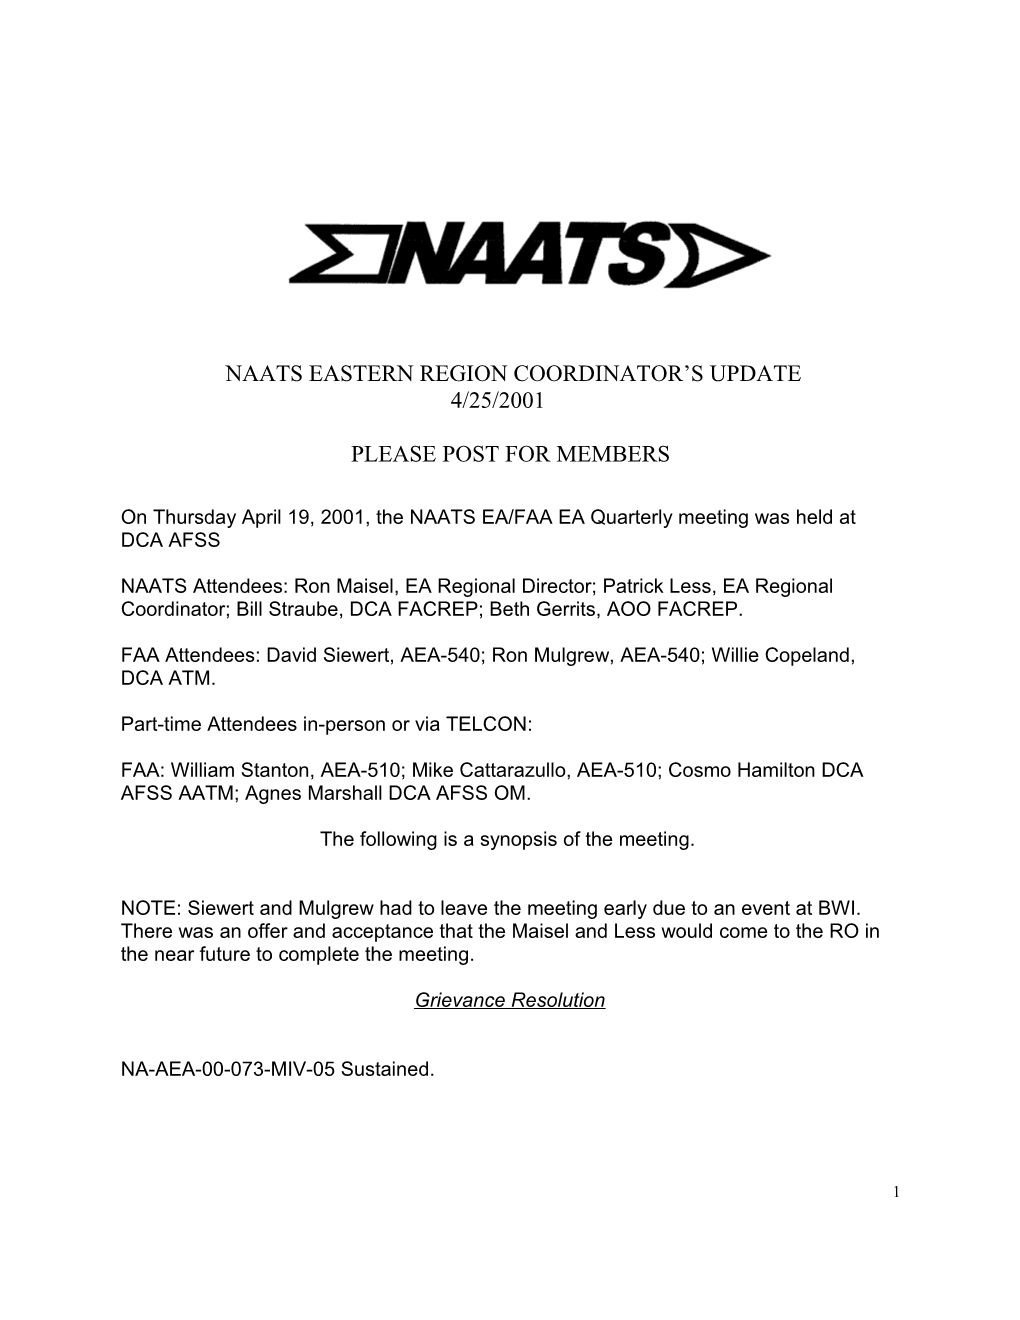 Naats Eastern Region Coordinator Members Update